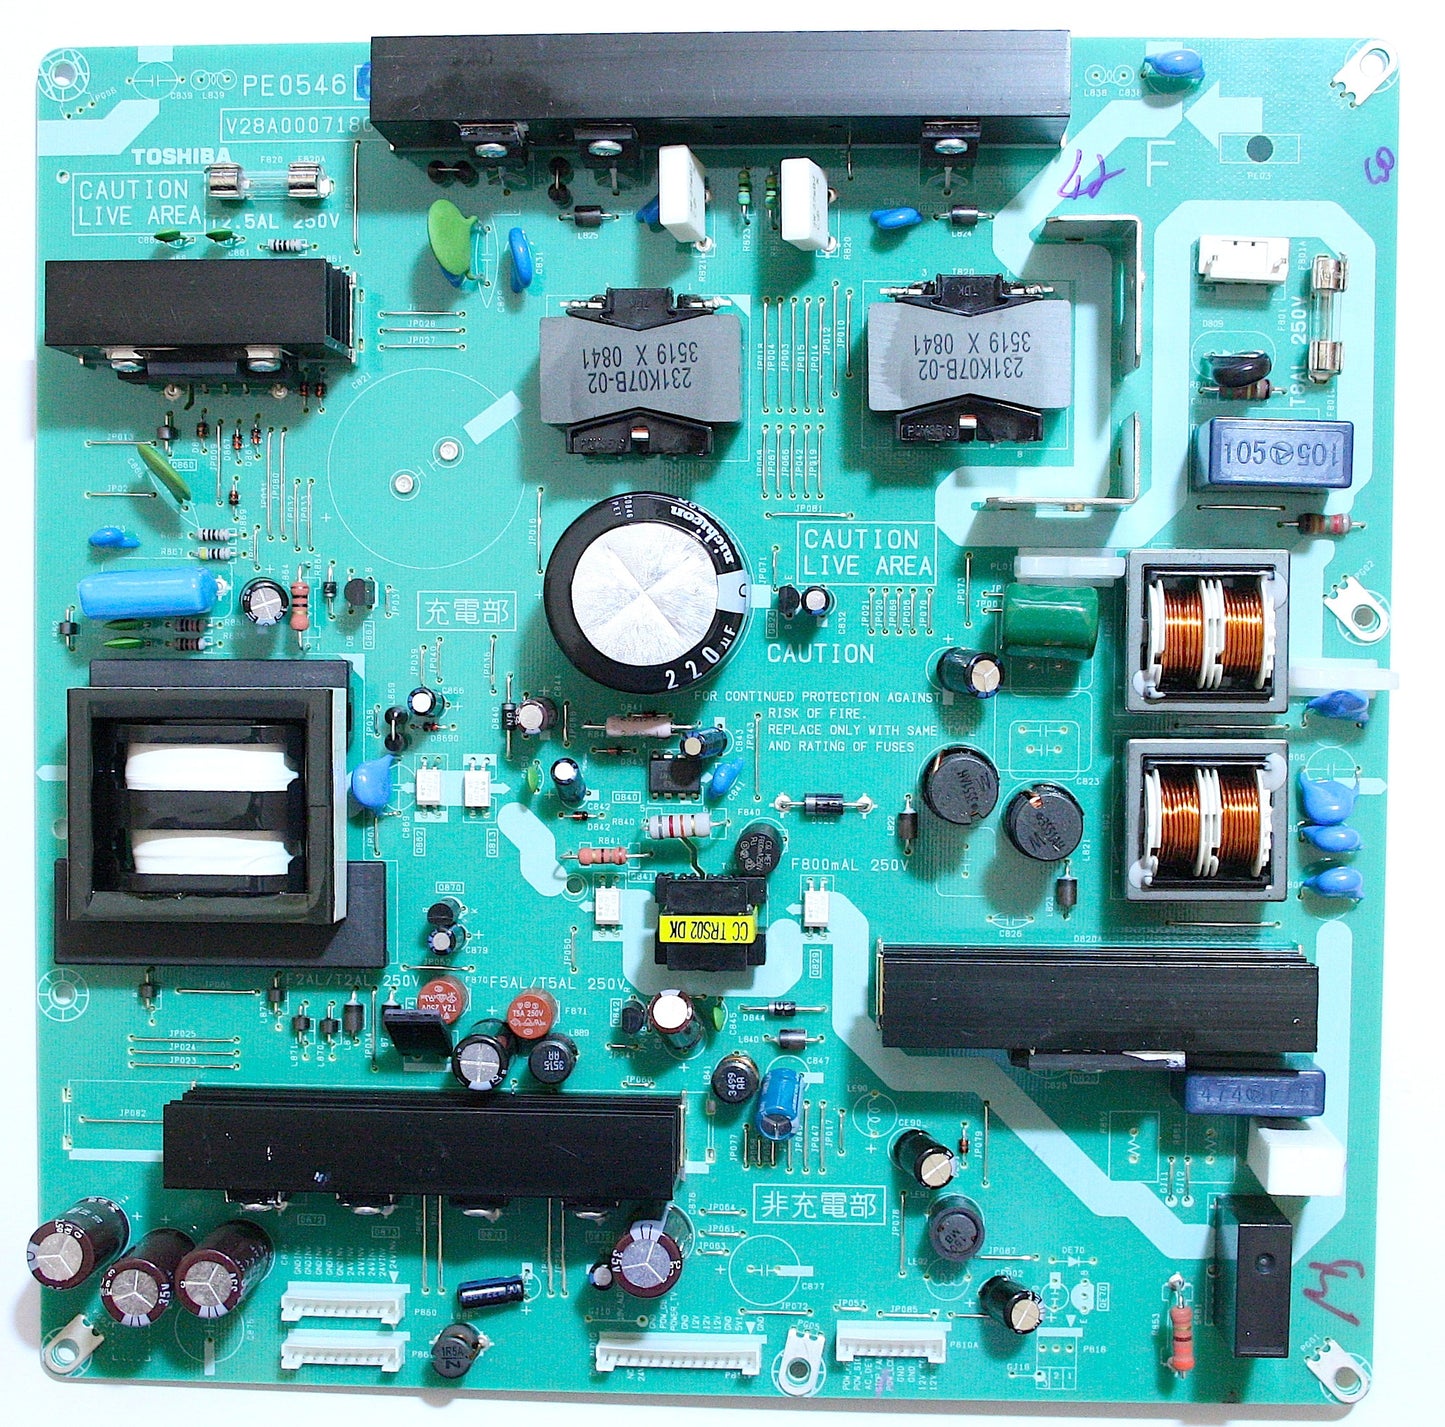 Toshiba Power PCB PE0546B1 = PE0546G V28A000718C1